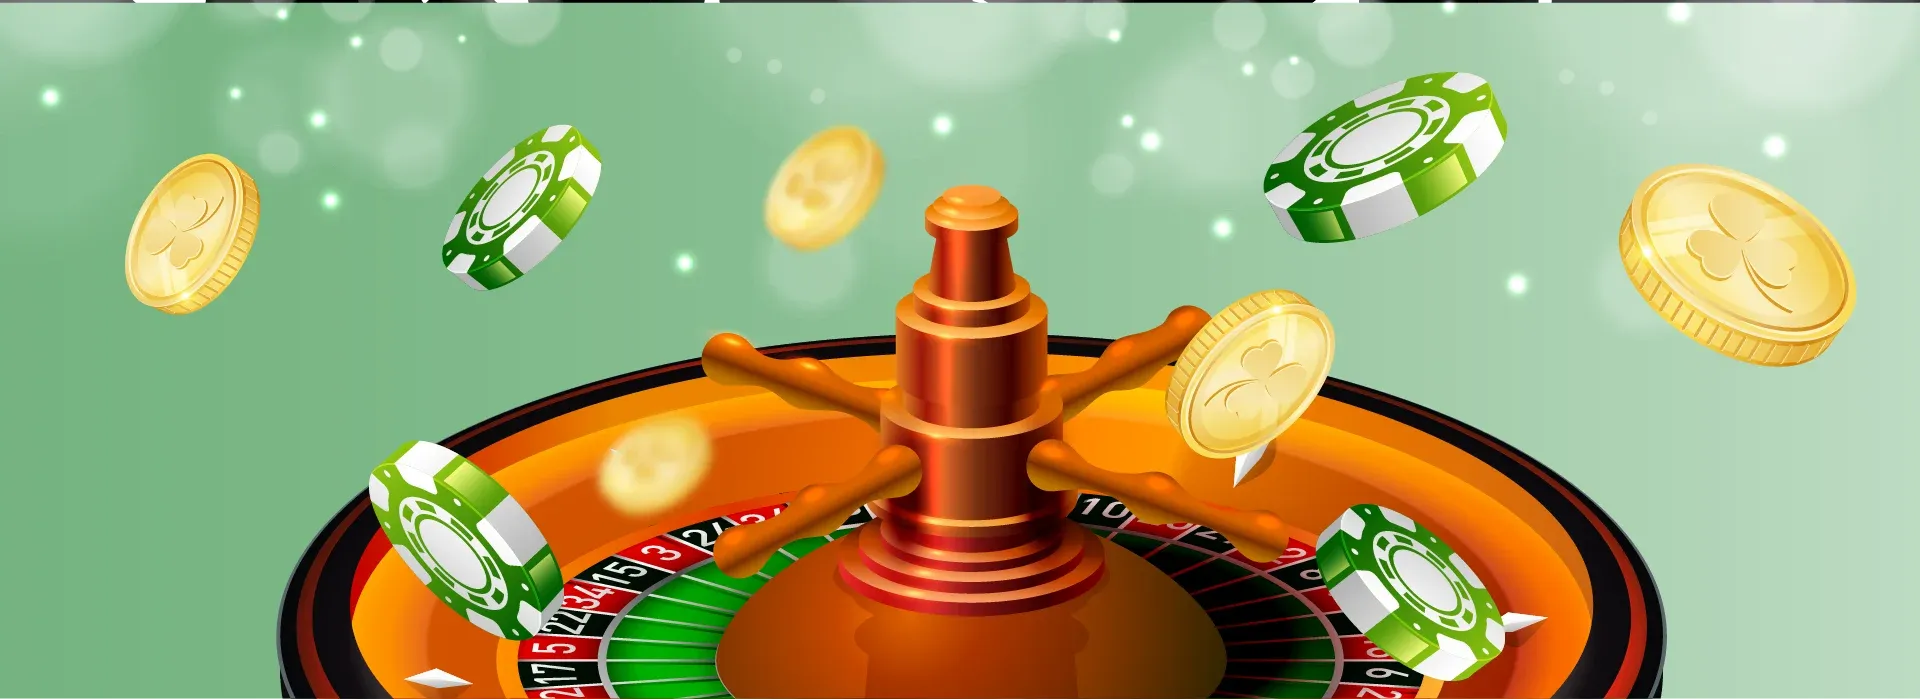 Live Casino Games Provider